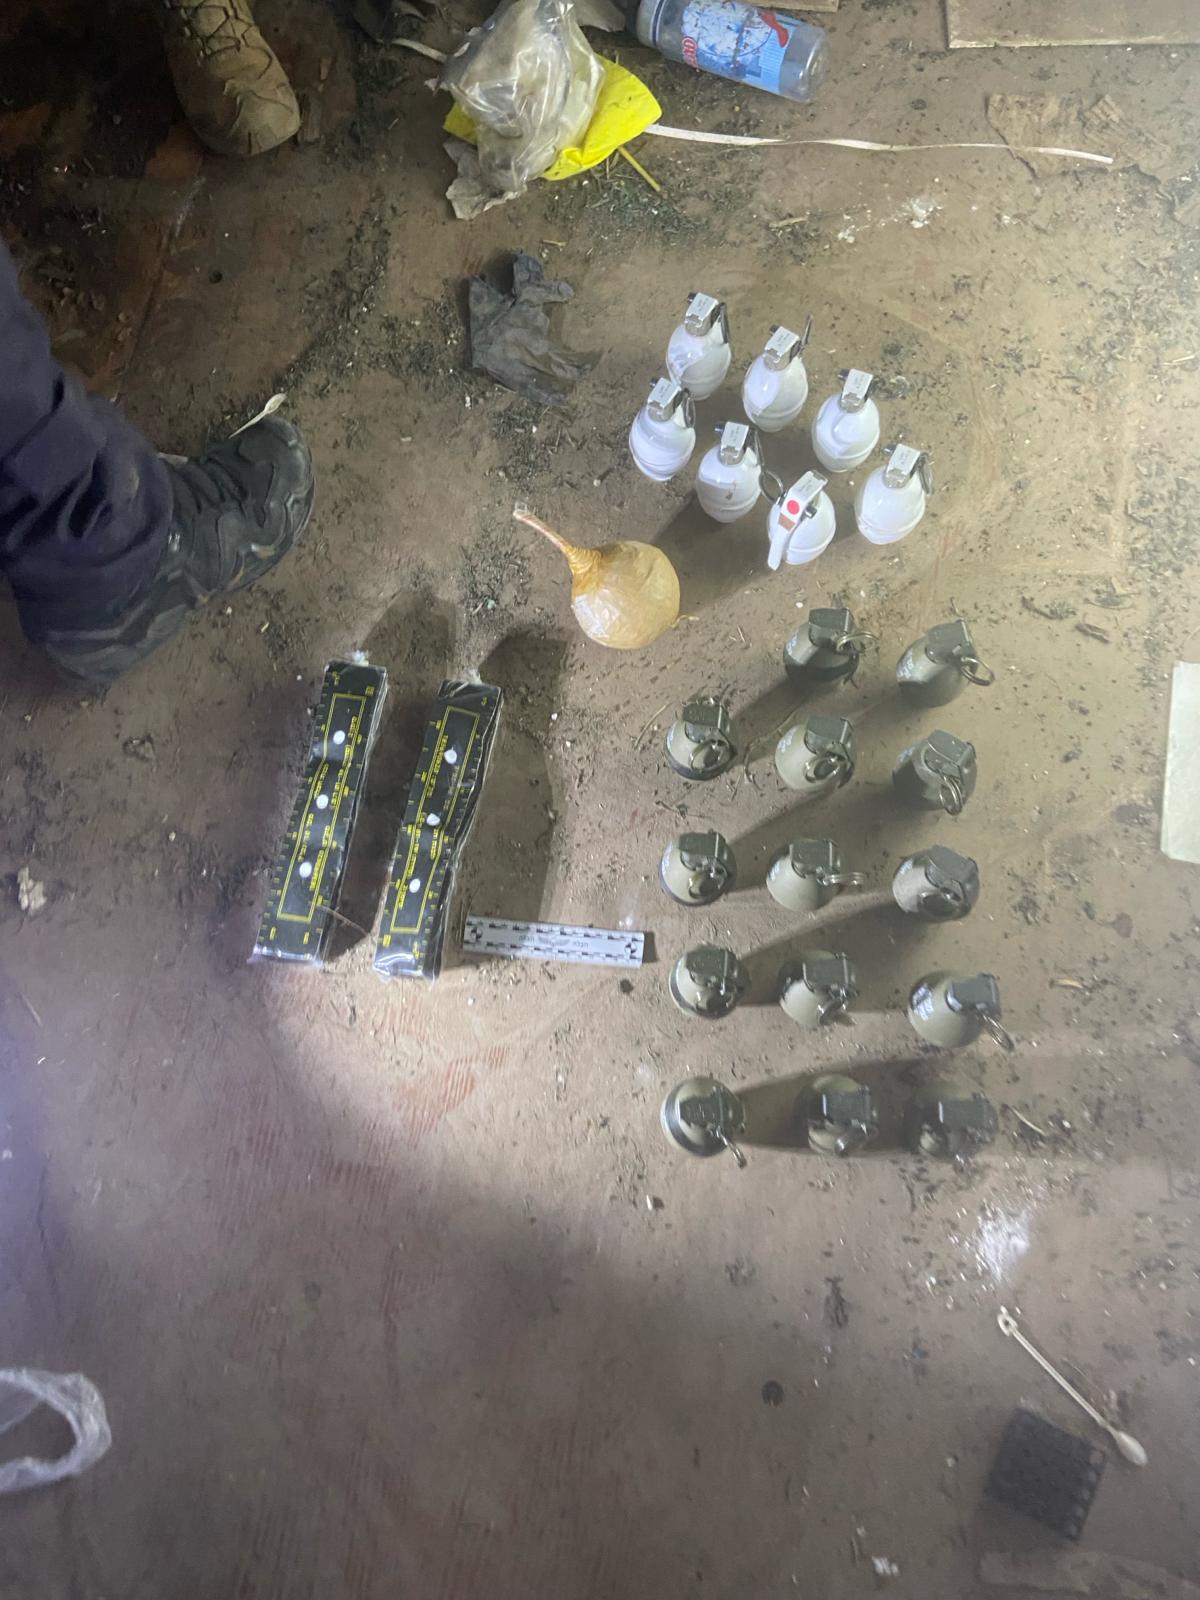 الشرطة: ضبطنا كمية كبيرة من الأسلحة بملعب بالجواريش في الرملة- بندقية كلاشنكوف و14 مسدسًا وقنابل